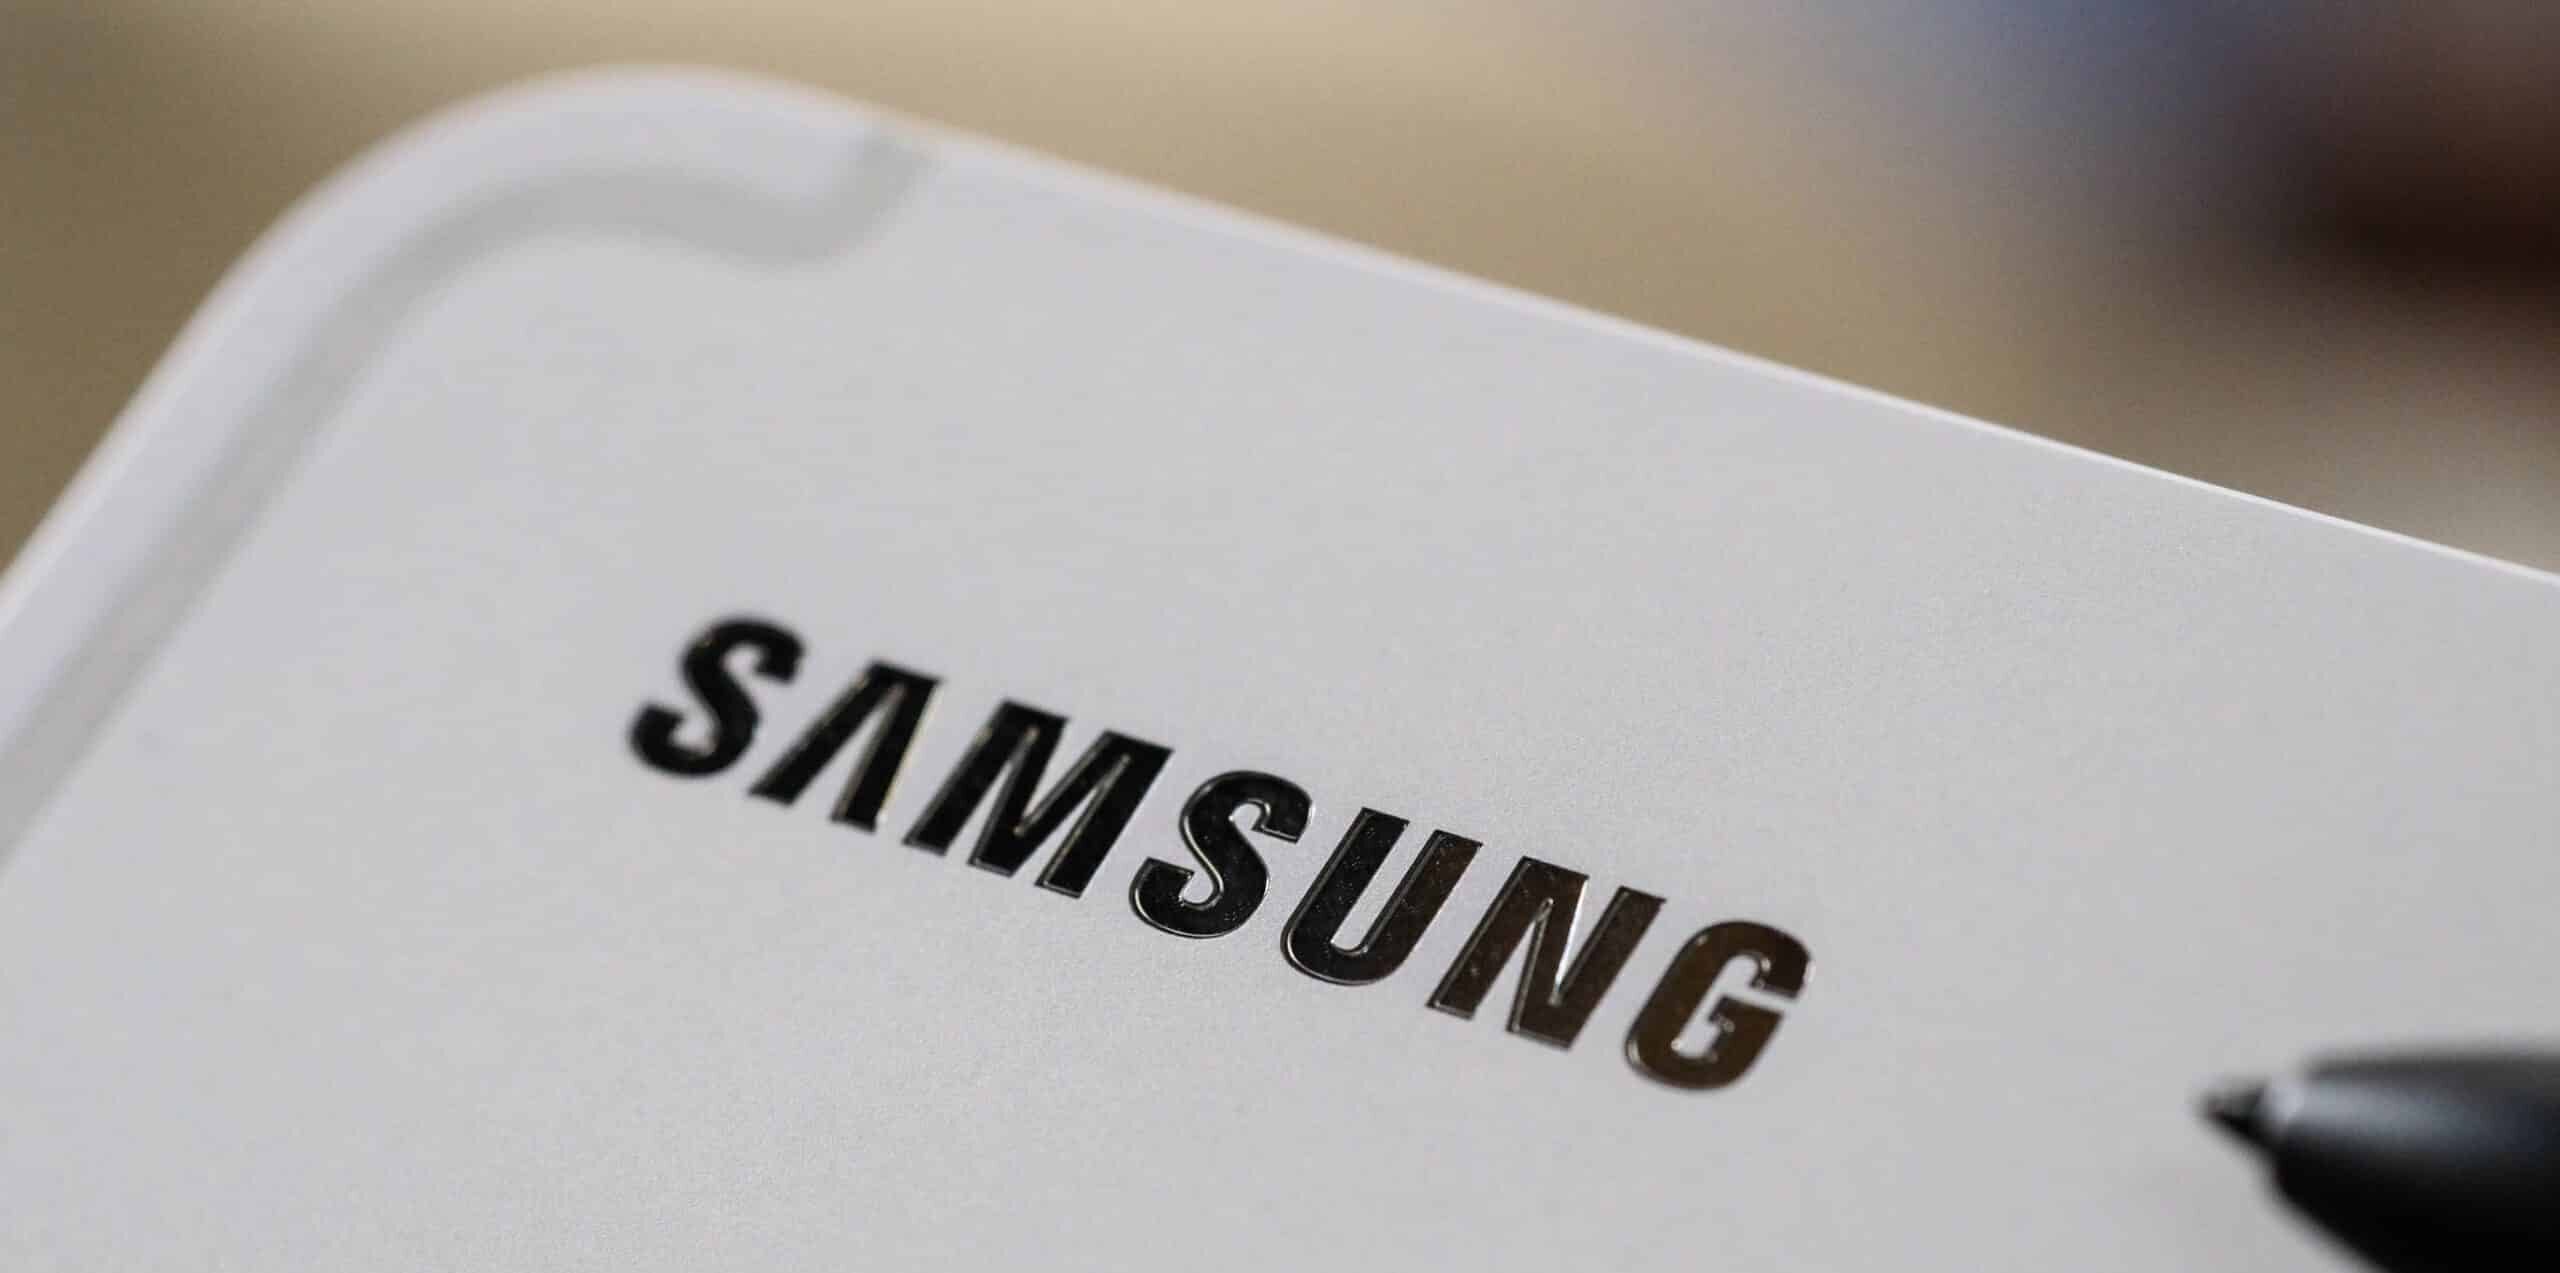 Samsung envisagerait de reprendre ses opérations en Russie Samsung logo Tab S8 scaled e1663325363326